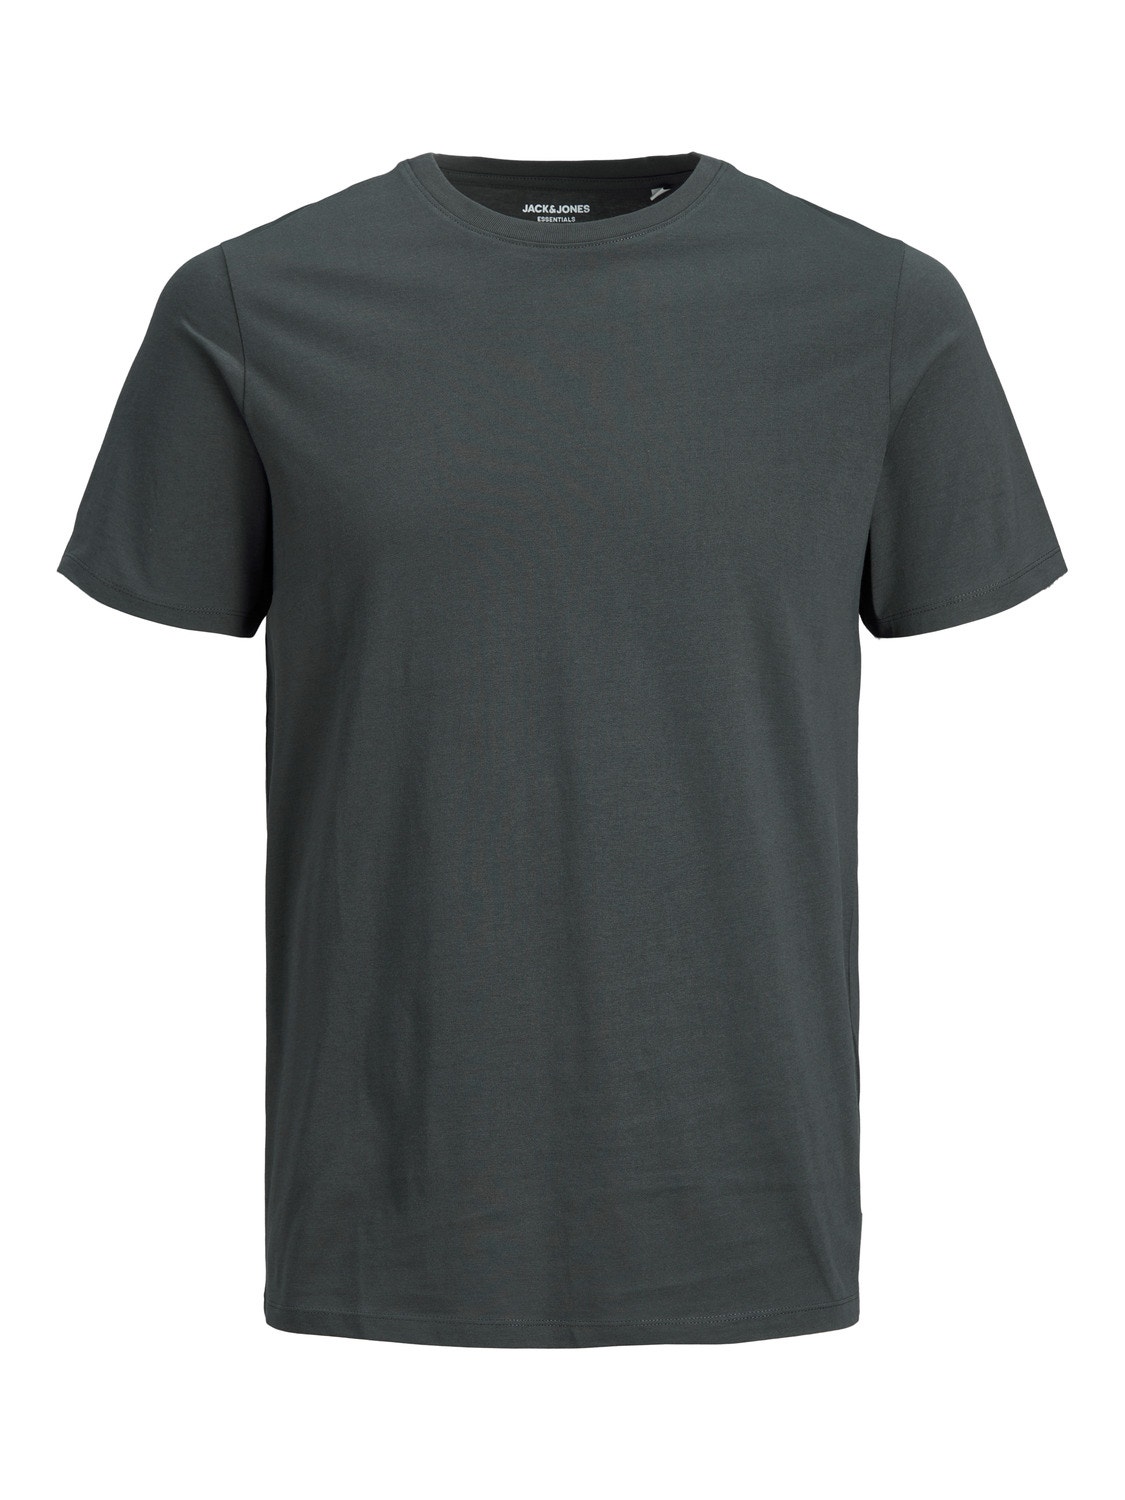 Jack & Jones Plain O-Neck T-shirt -Asphalt - 12156101